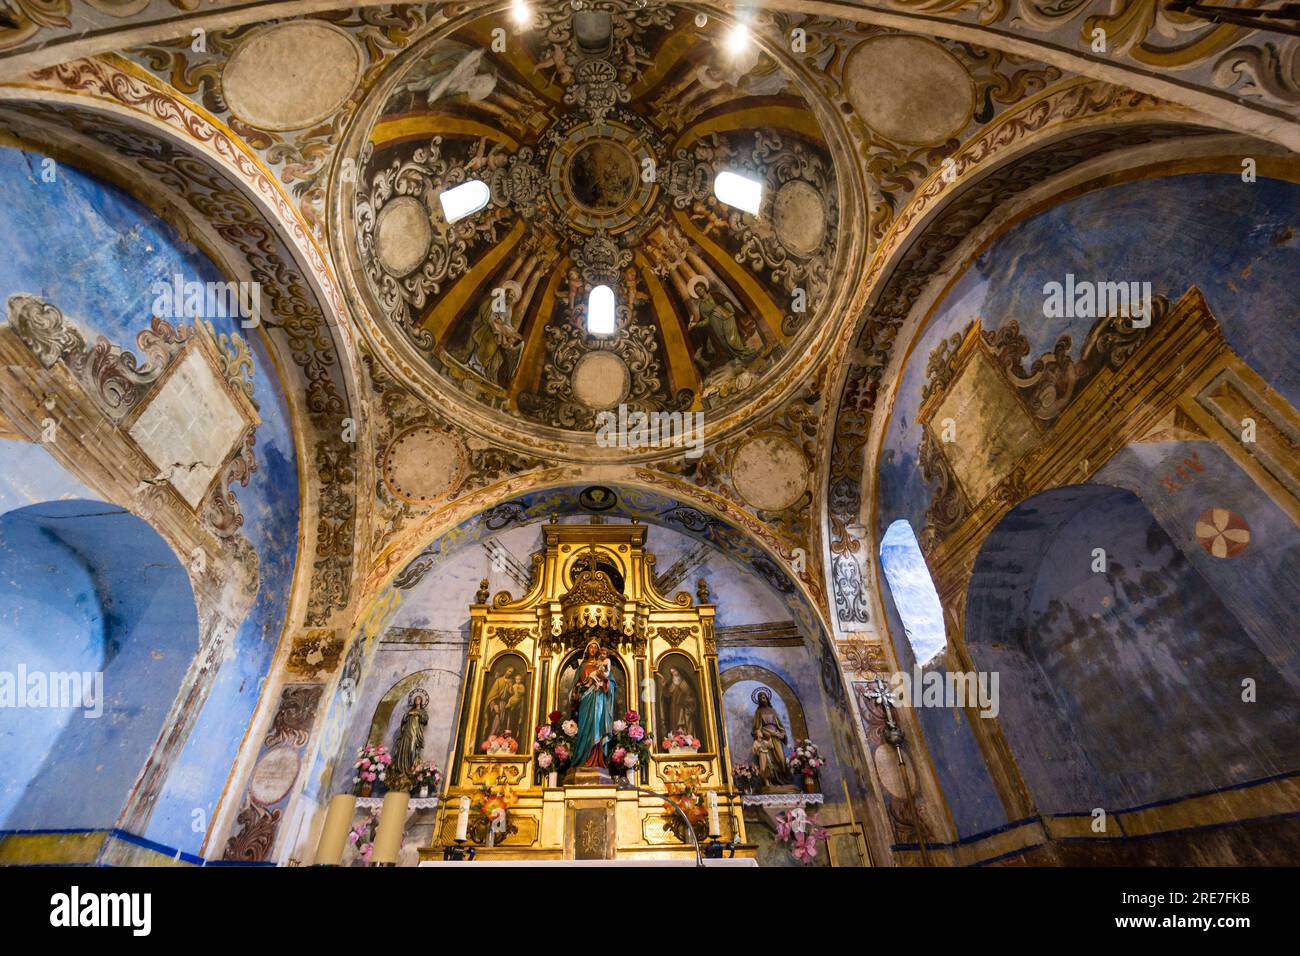 Cupola con i quattro evangelisti che circondano la scena dell'Incoronazione della Vergine, chiesa del XVI secolo, santuario di origine romana di Santa María de Foto Stock